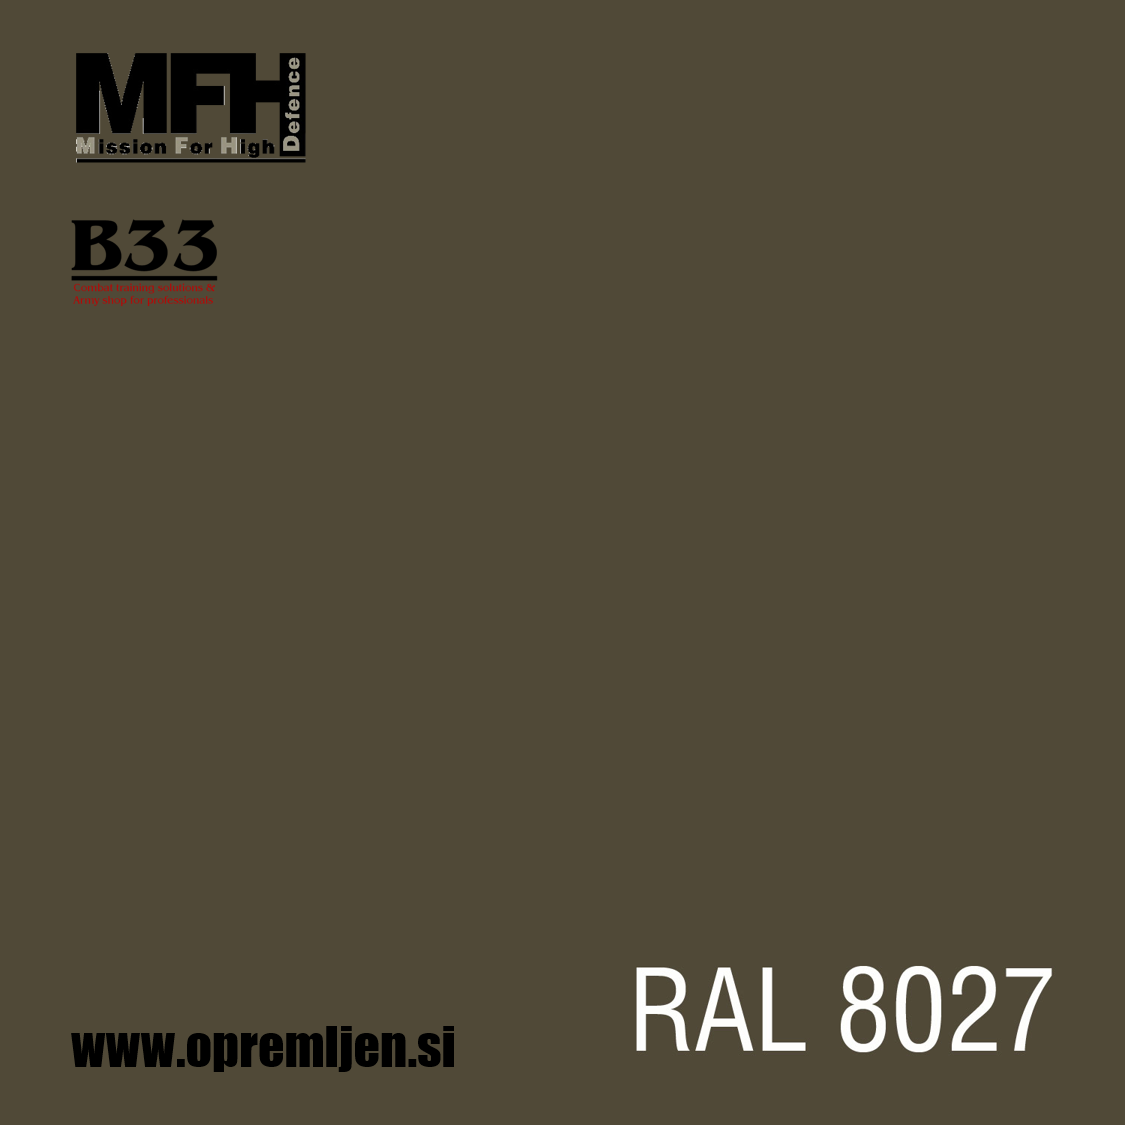 Vojaška barva sprej blatno rjava MUD BROWN mat RAL8027 400ml MFH - Max Fuchs by B33 army shop at www.opremljen.si 